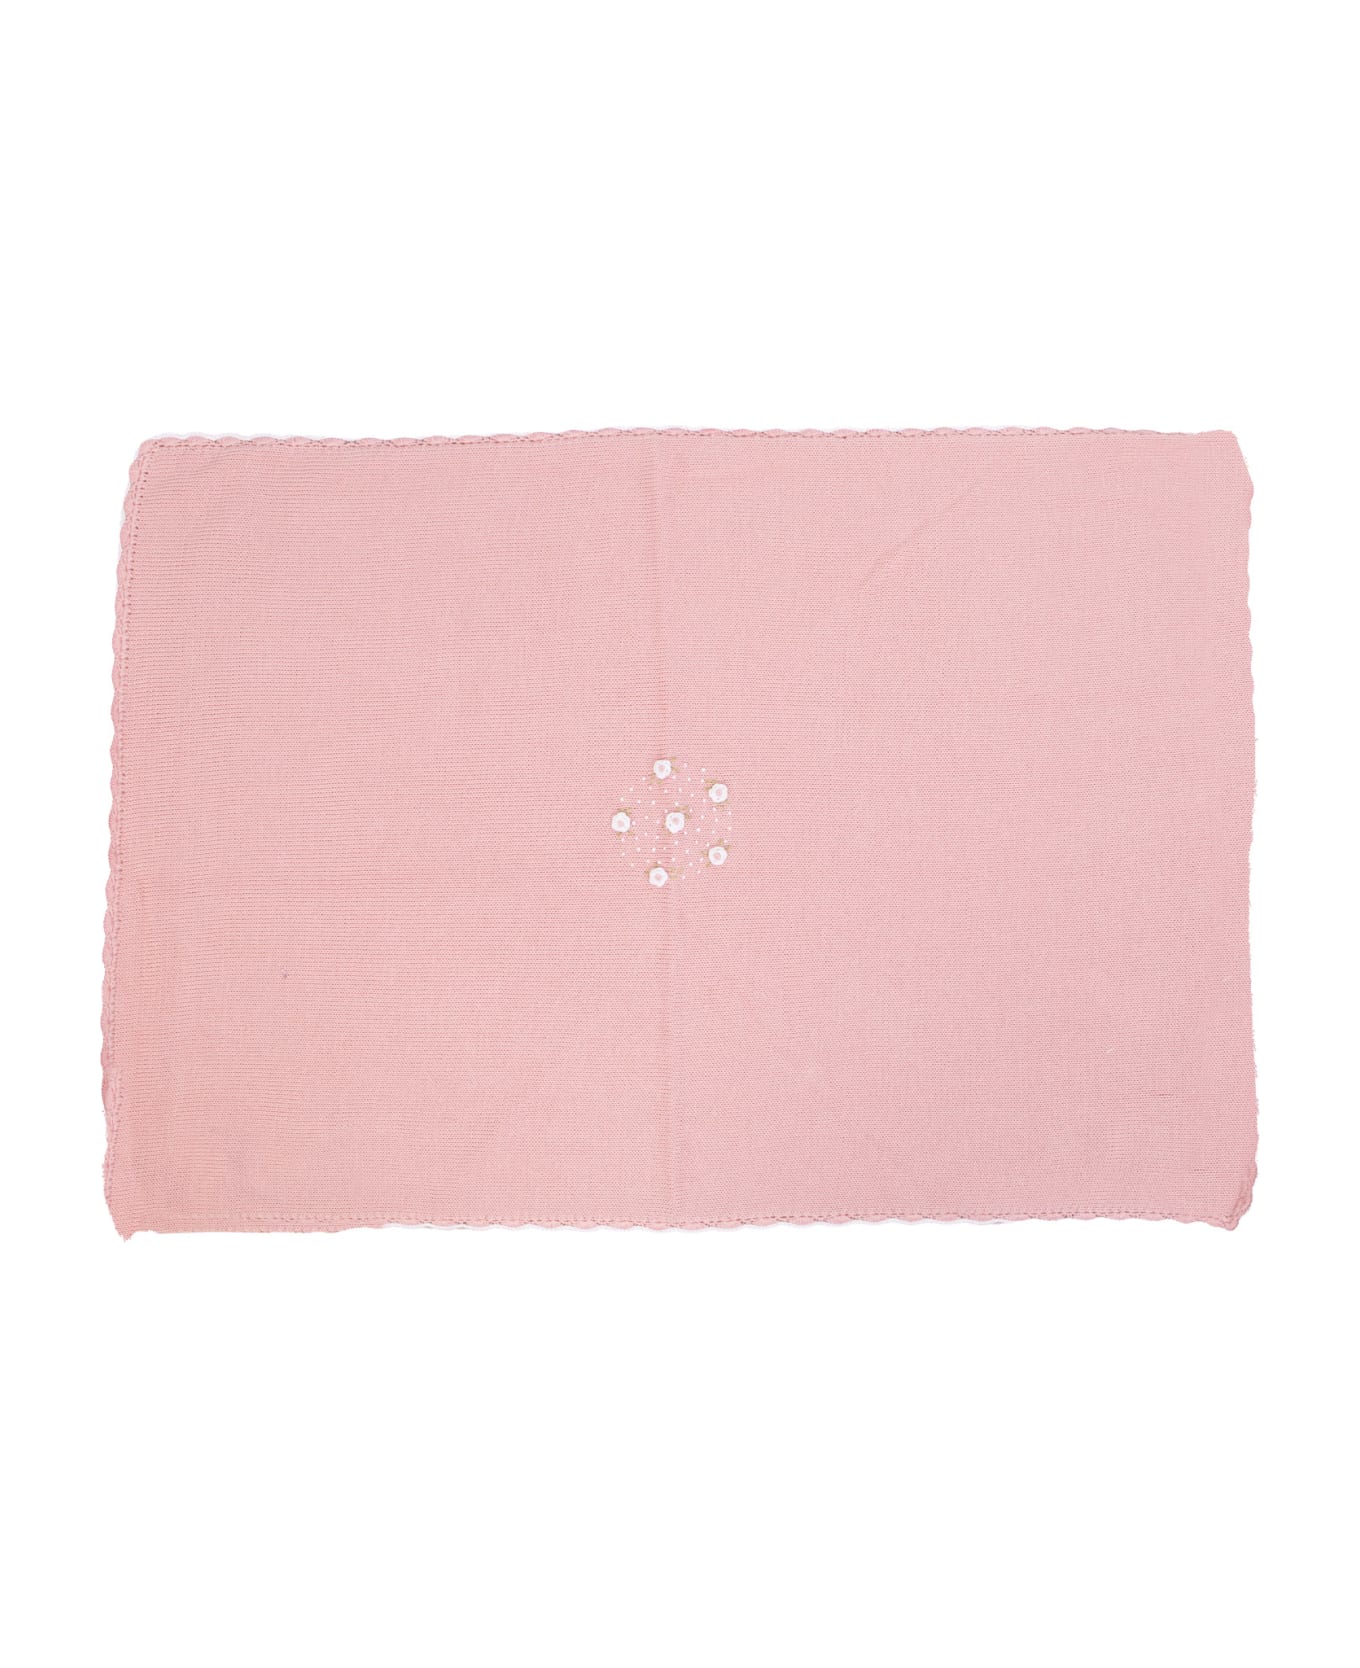 Piccola Giuggiola Cotton Knit Blanket - Rose